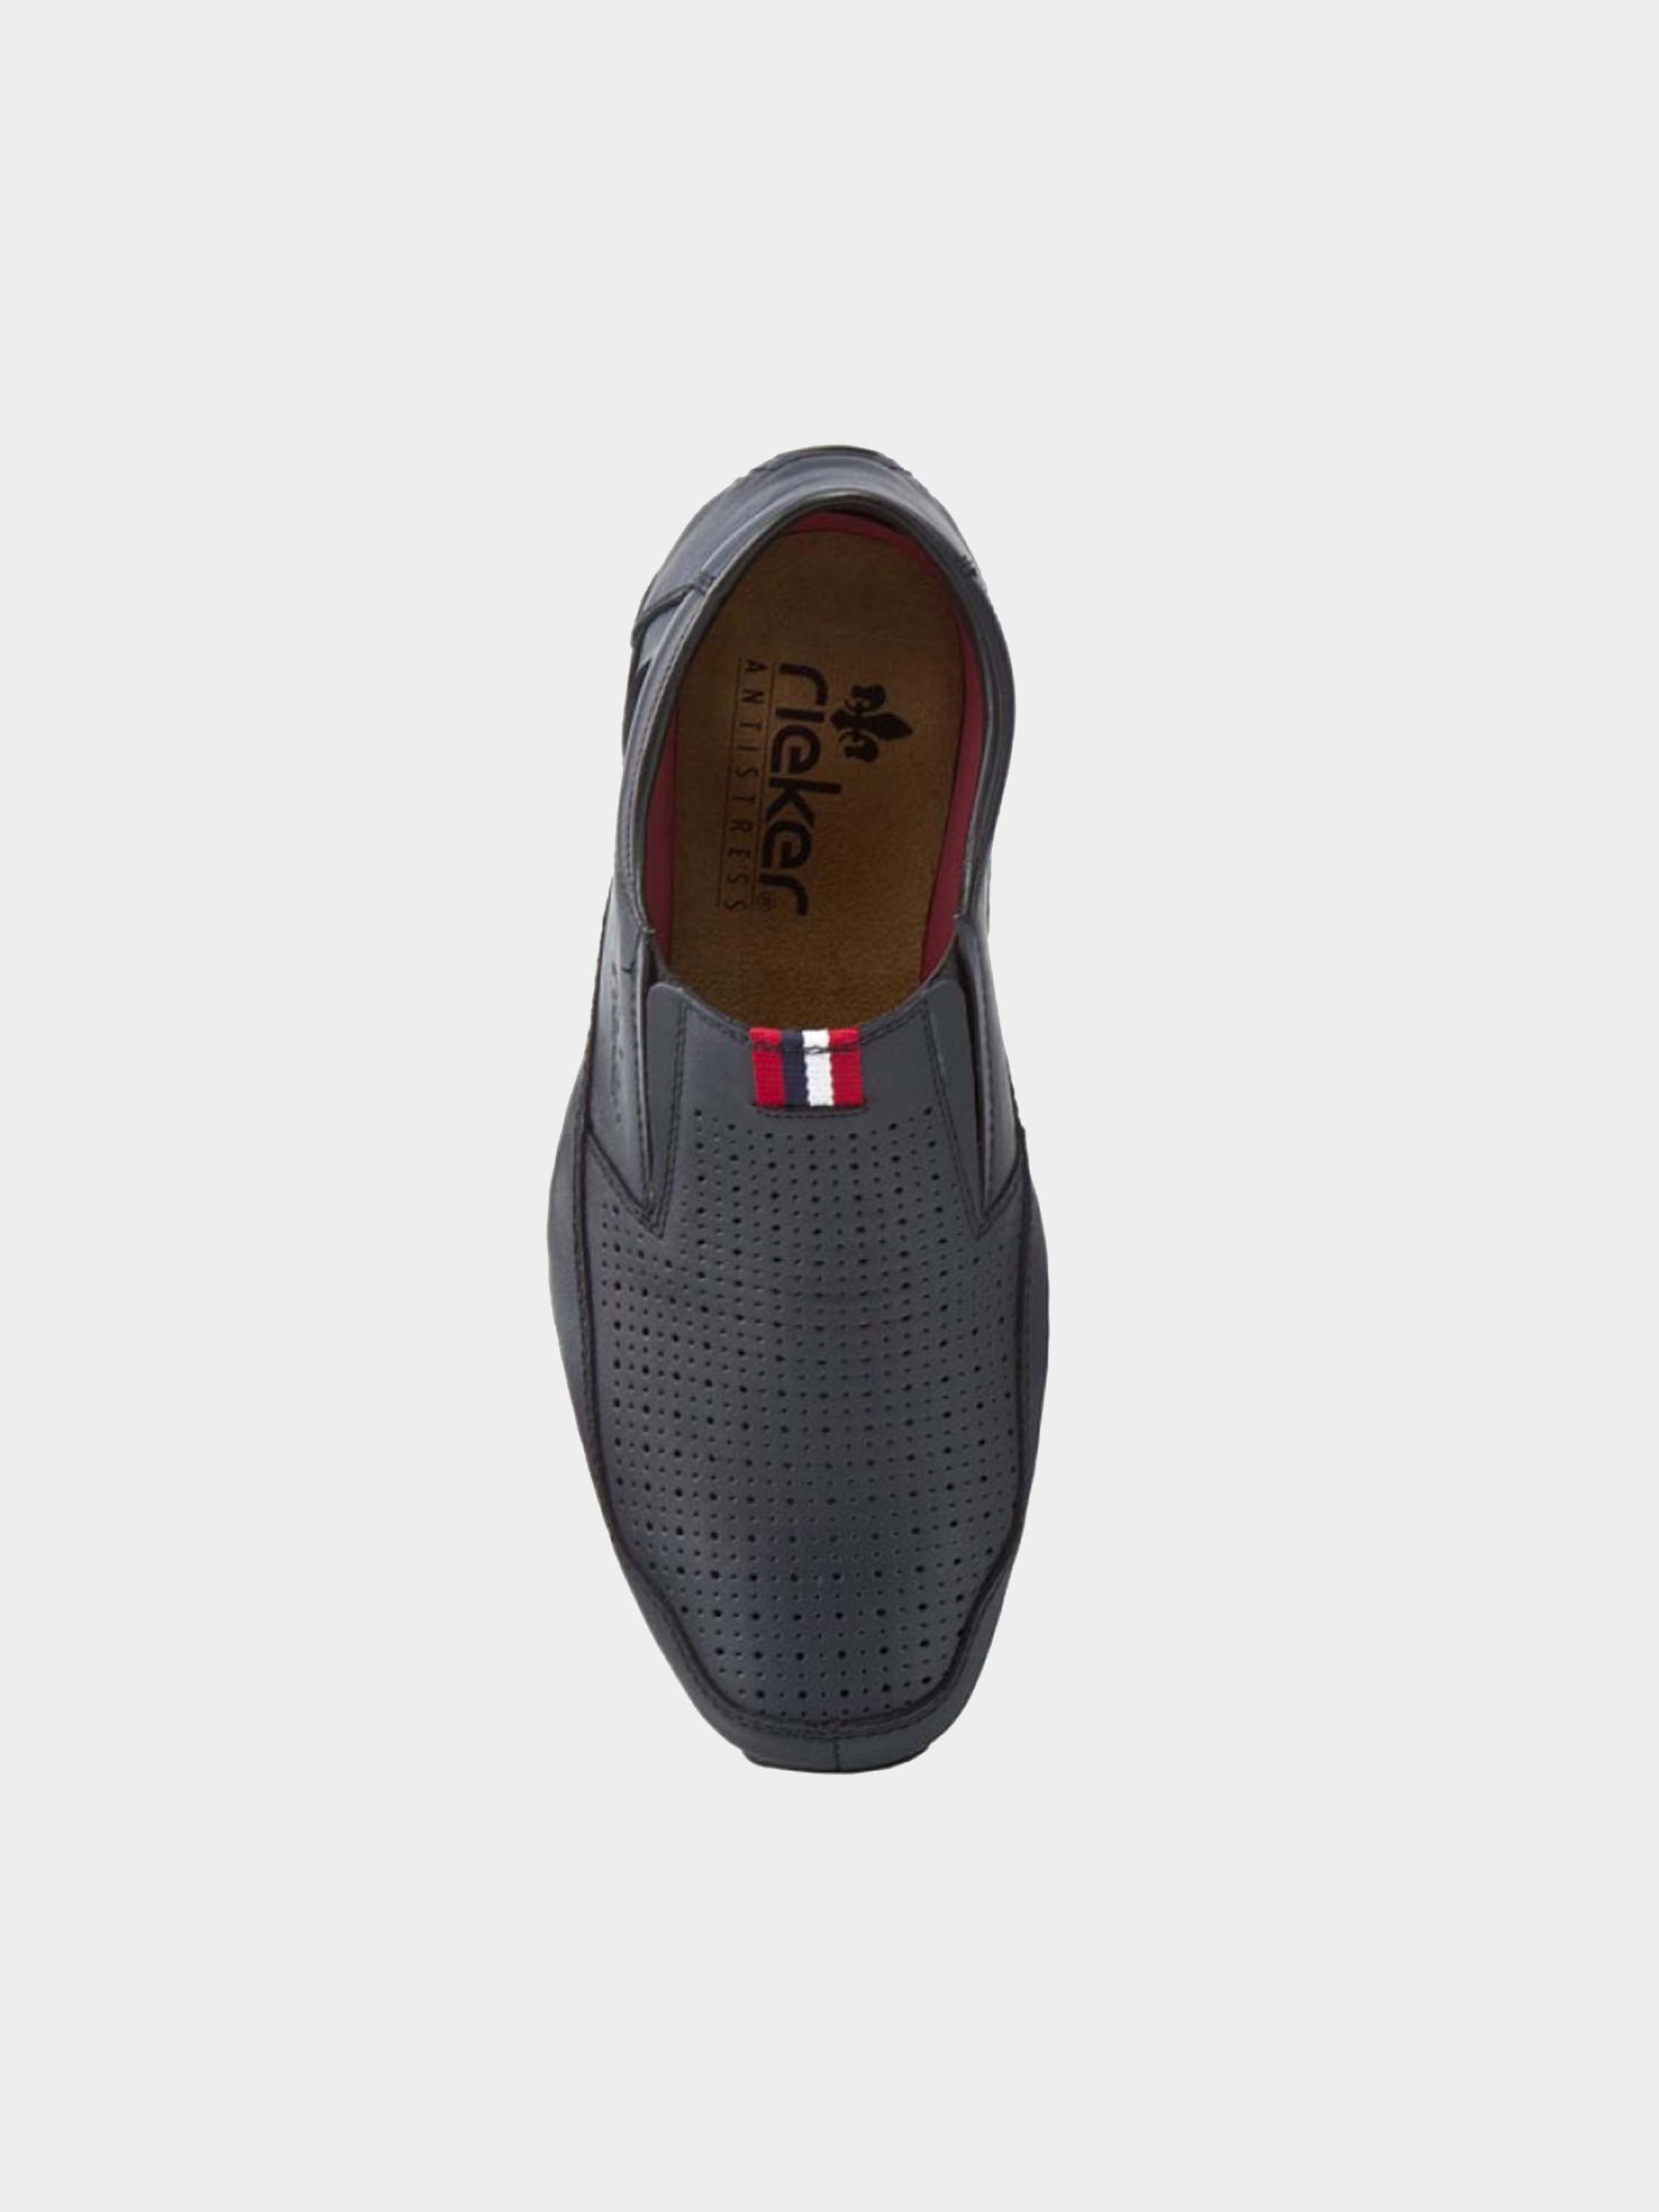 Rieker 06367 Men's Casual Slip On Shoes #color_Blue